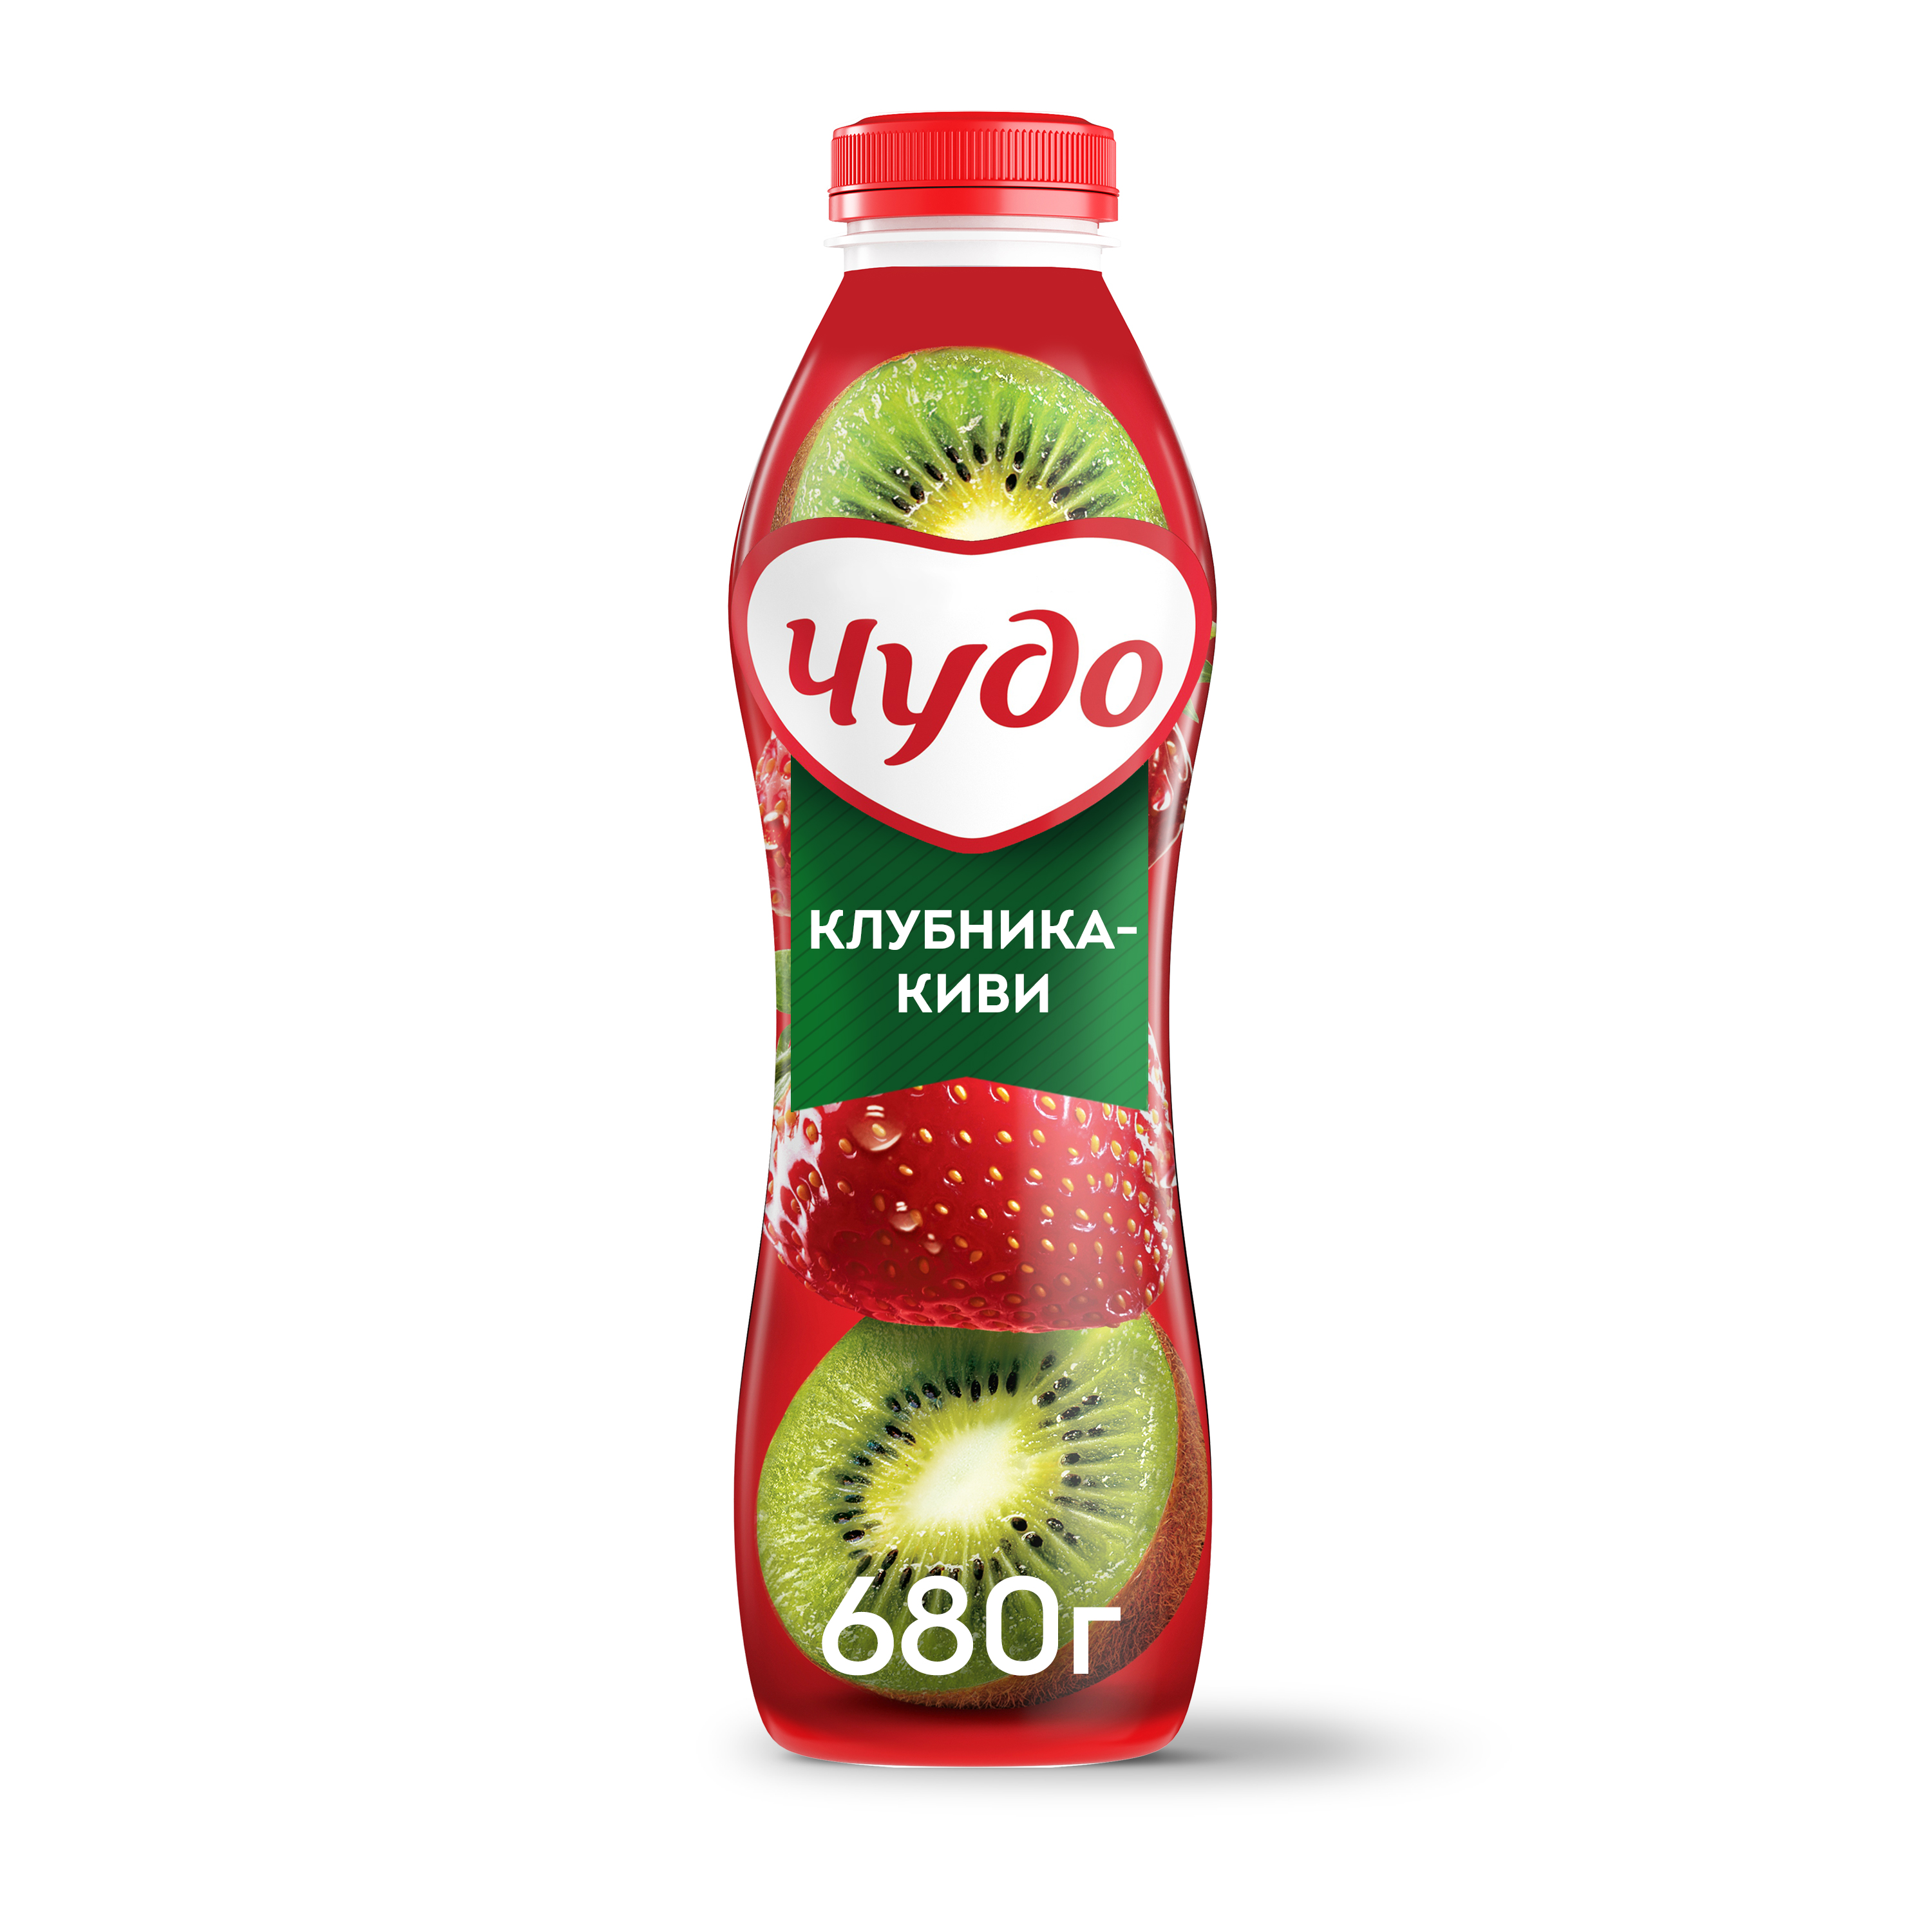 Питьевой йогурт Чудо клубника-киви 1,9% 680 г